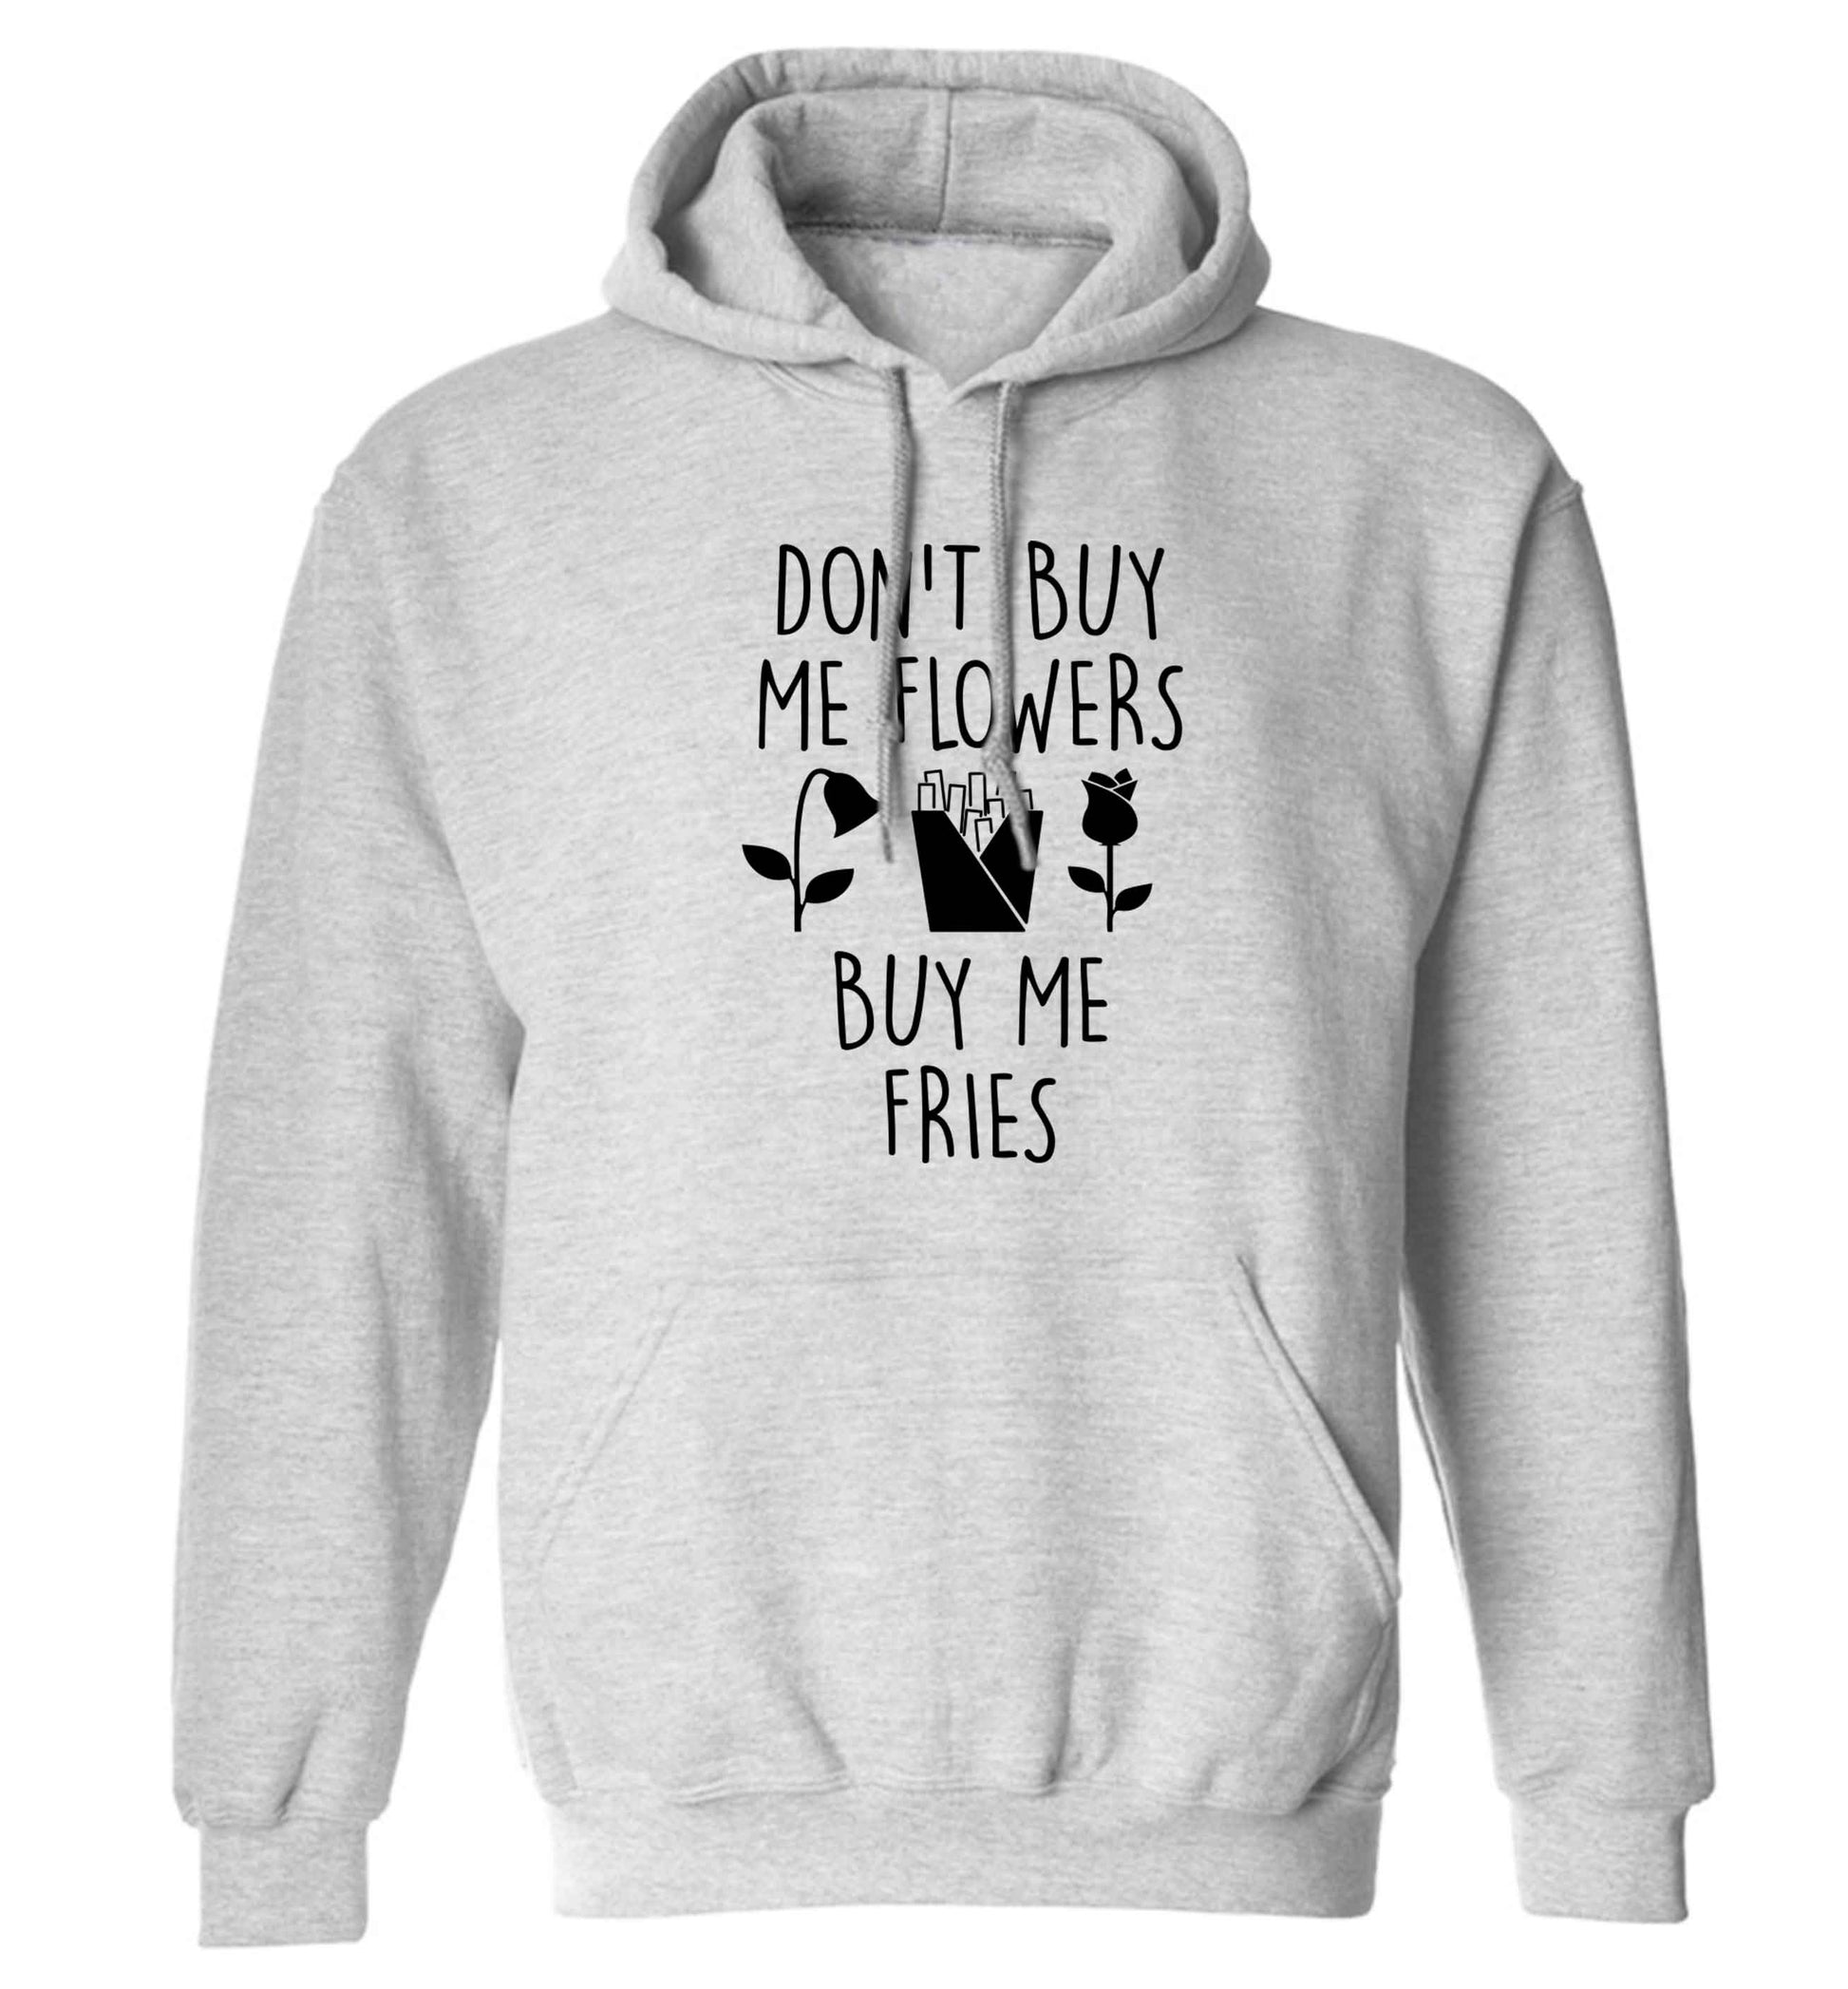 Don't buy me flowers buy me fries adults unisex grey hoodie 2XL